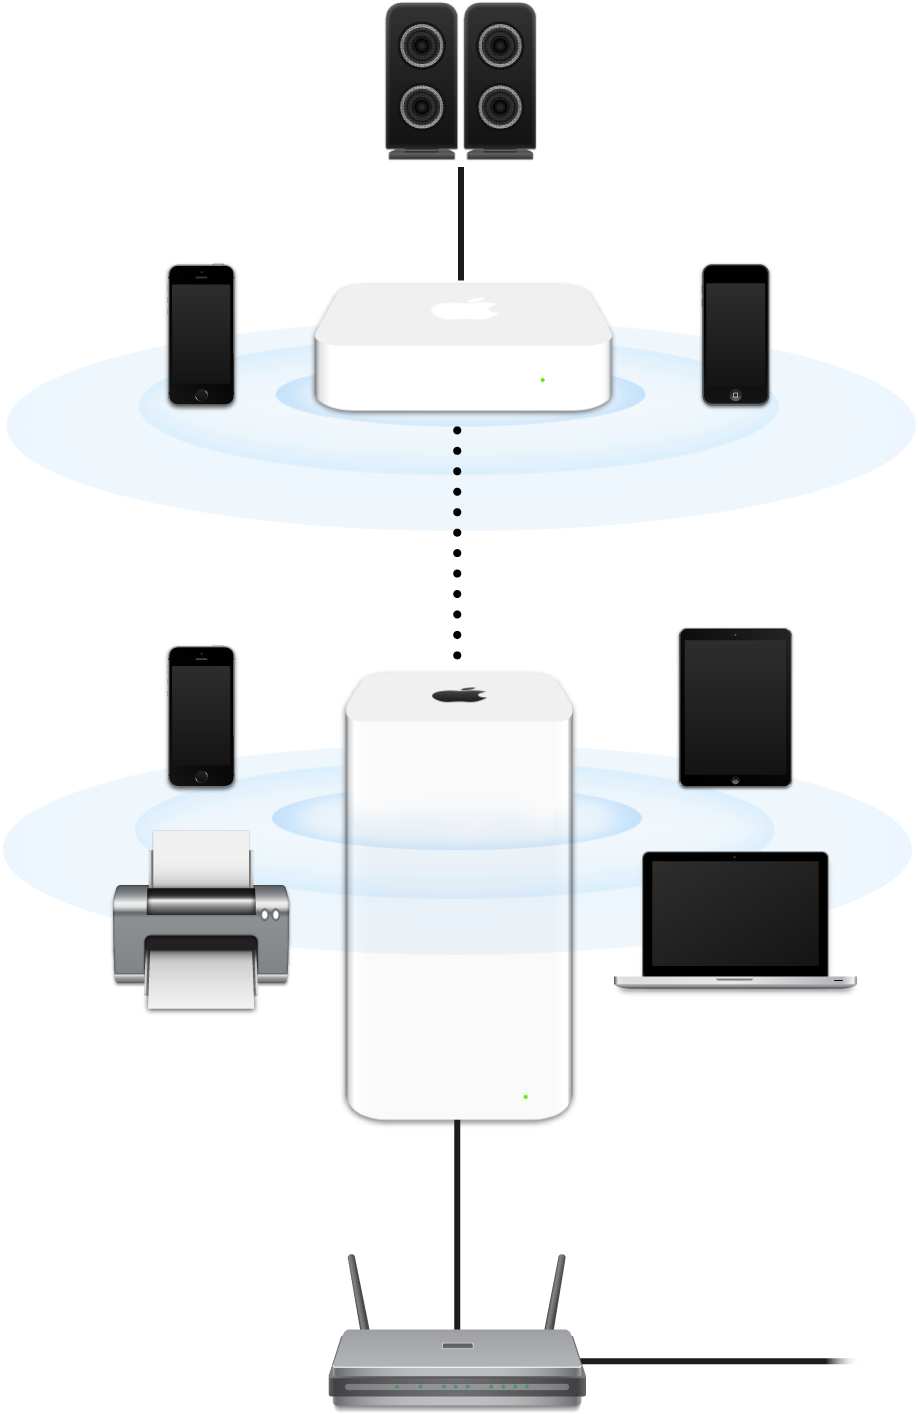 Stacje bazowe AirPort Extreme i AirPort Express podłączone do modemu i łączące się z różnymi urządzeniami.